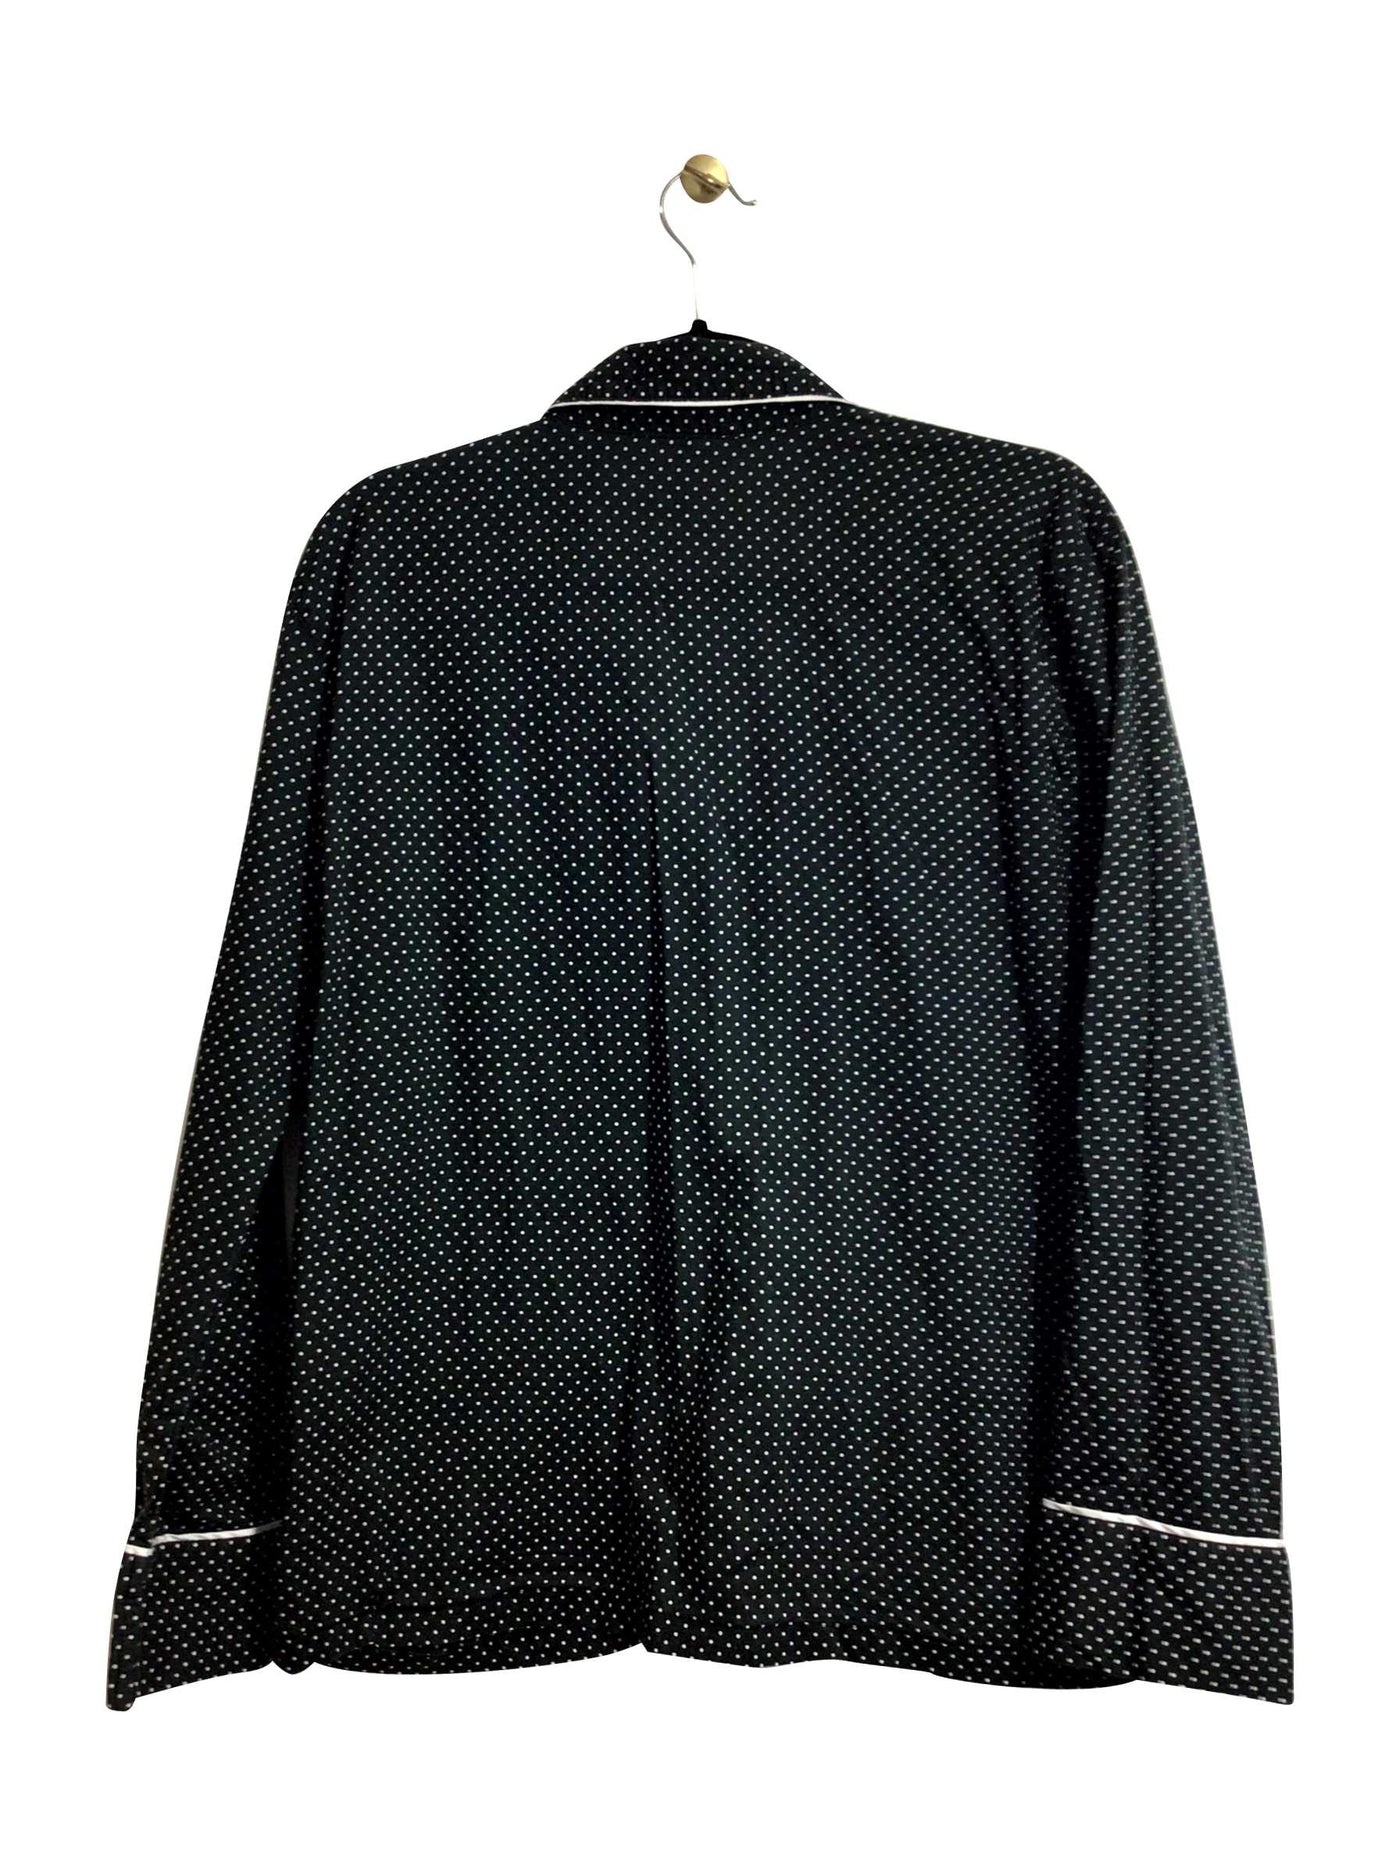 VICTORIA'S SECRET Regular fit Night Wear in Black - Size M | 14.12 $ KOOP